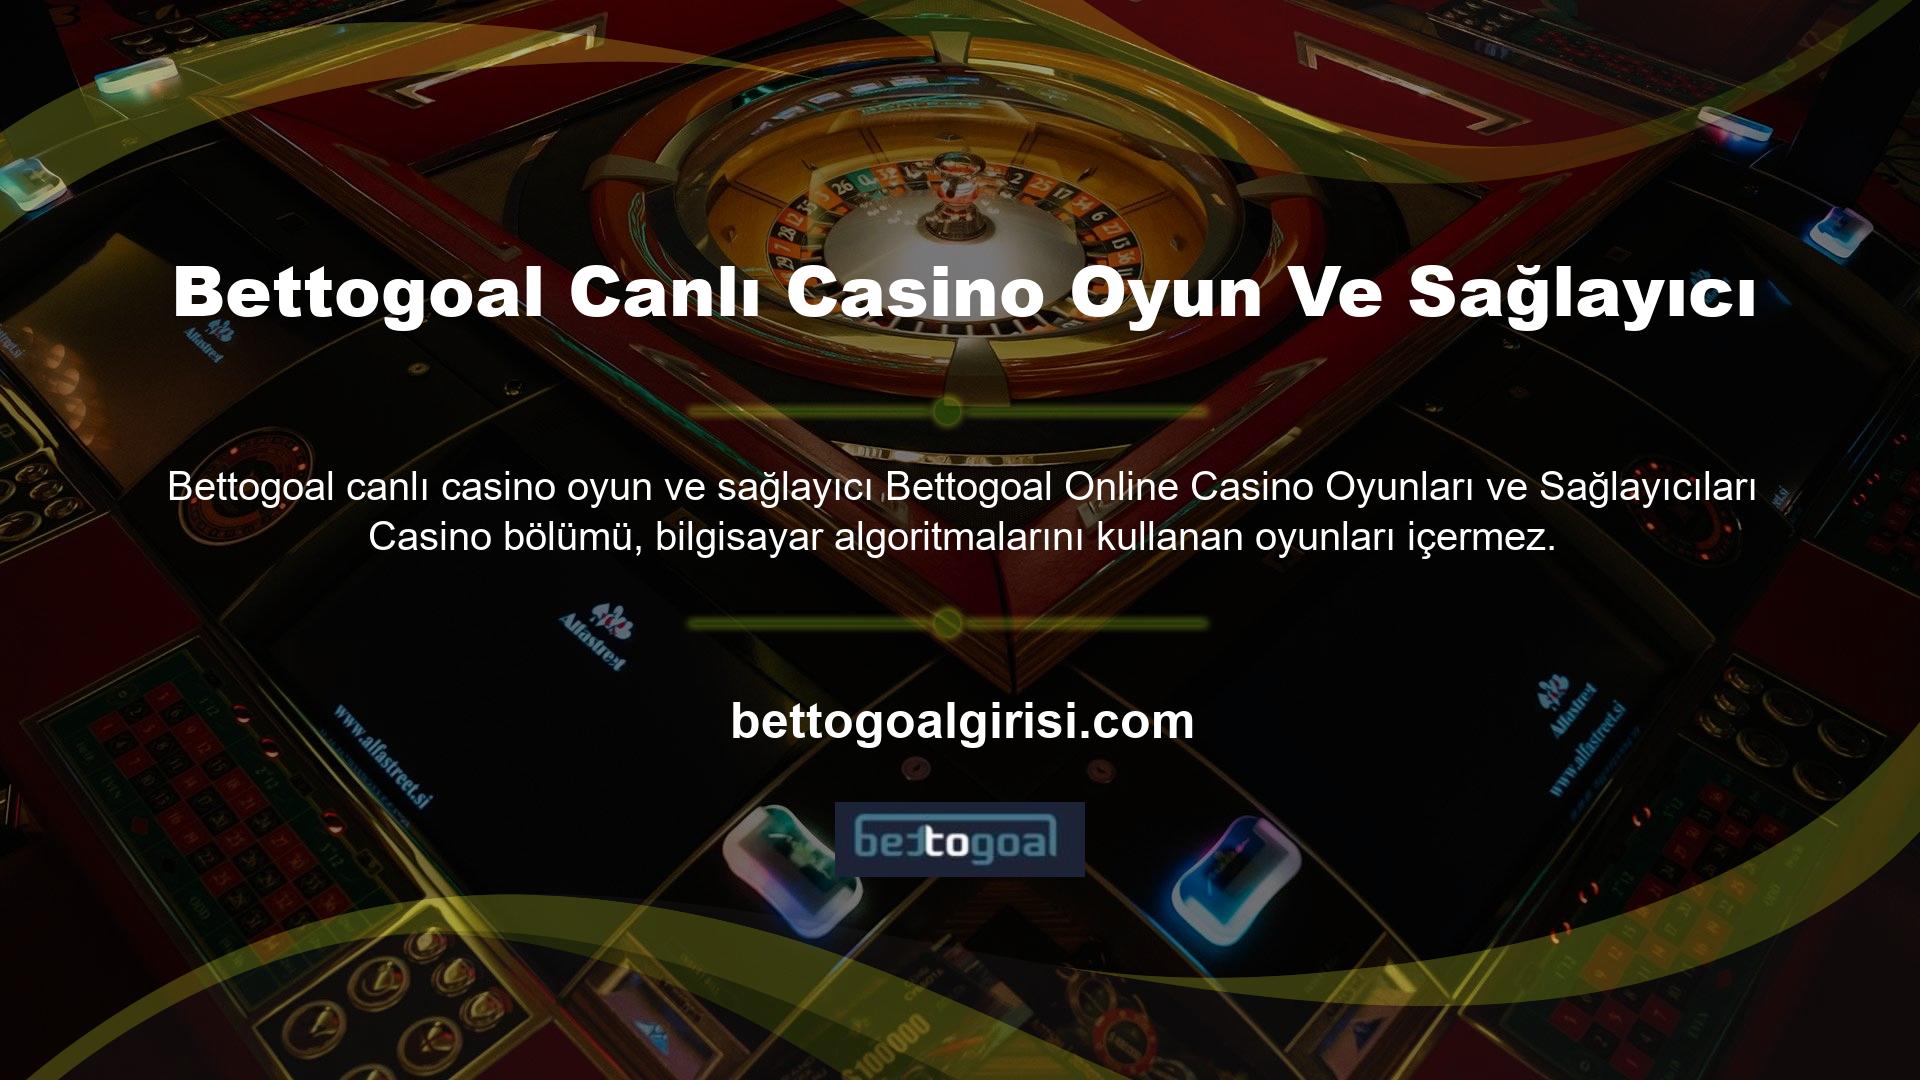 Canlı yayın sırasında oynayabileceğiniz bir canlı casino oyun hizmeti de bulunmaktadır